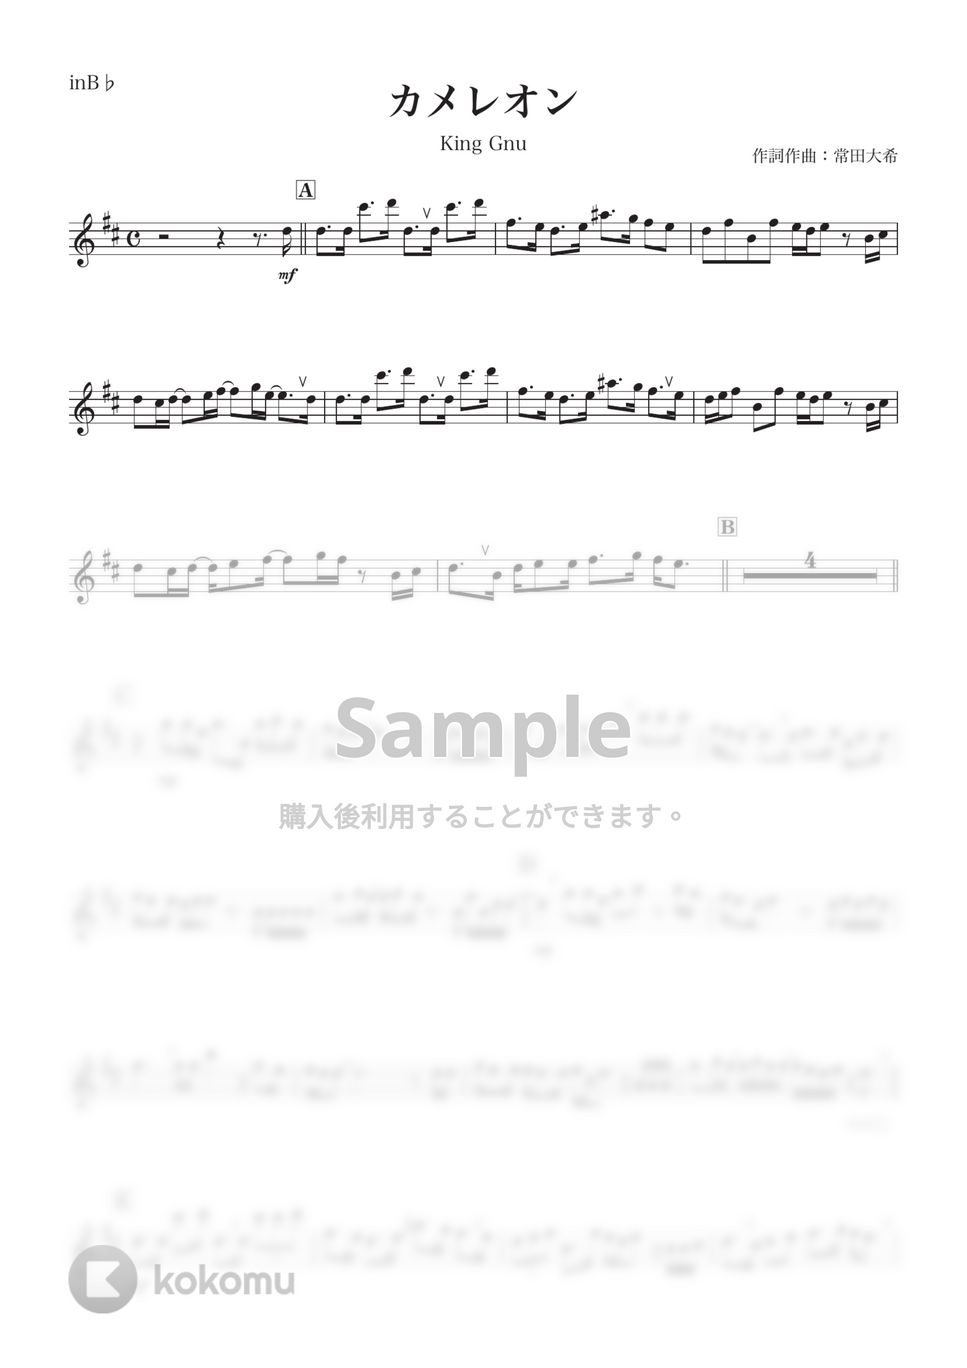 King Gnu - カメレオン (B♭) by kanamusic